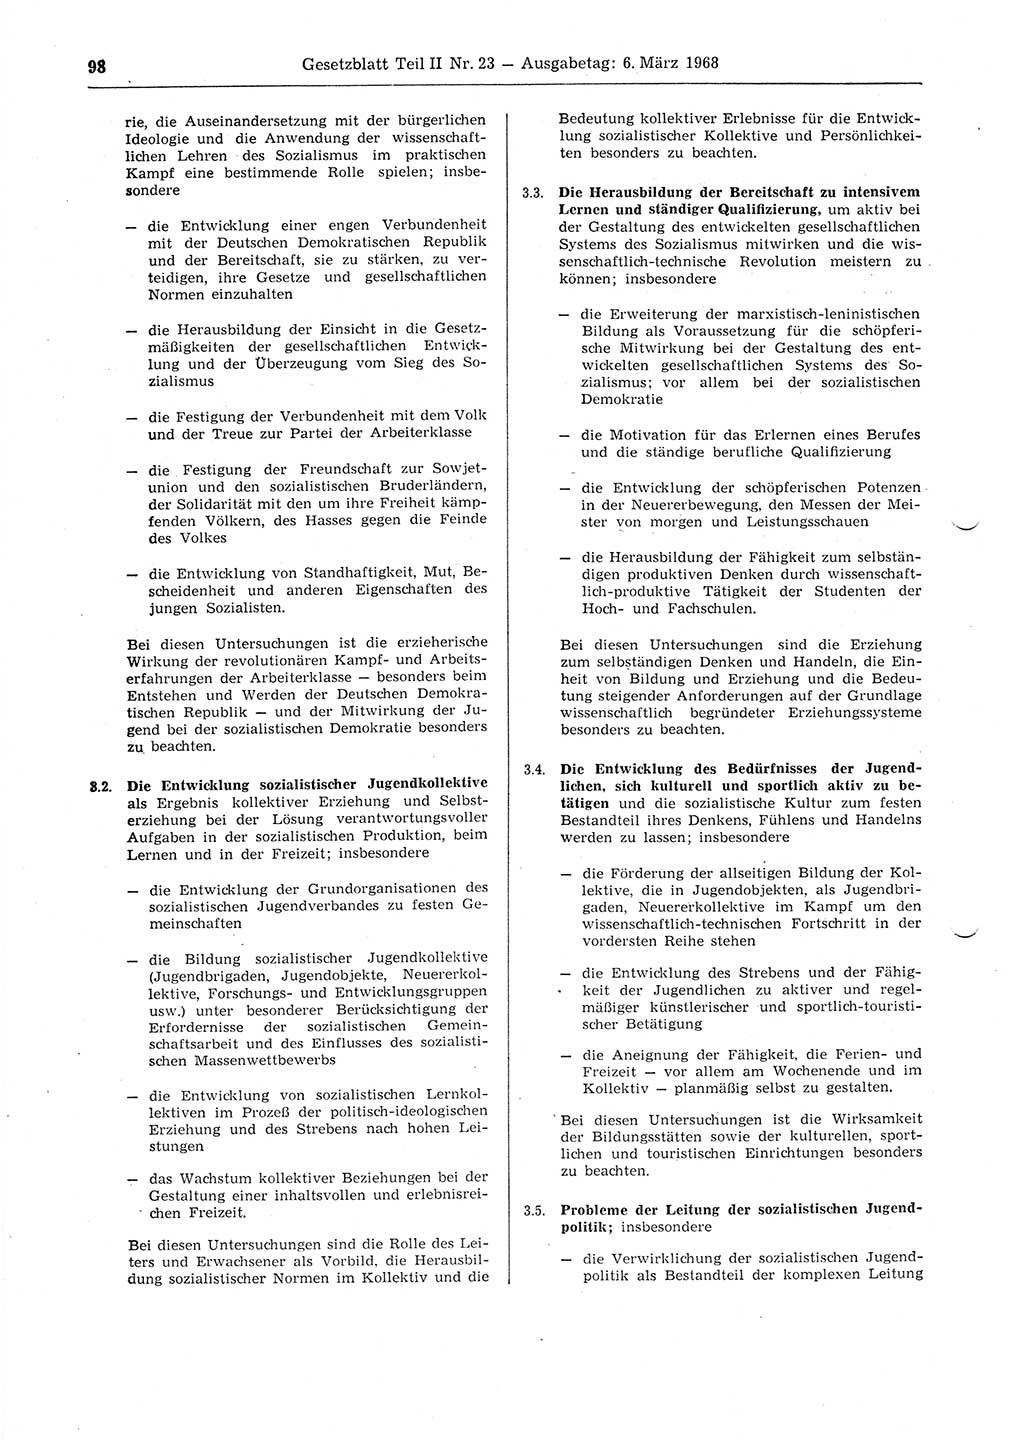 Gesetzblatt (GBl.) der Deutschen Demokratischen Republik (DDR) Teil ⅠⅠ 1968, Seite 98 (GBl. DDR ⅠⅠ 1968, S. 98)